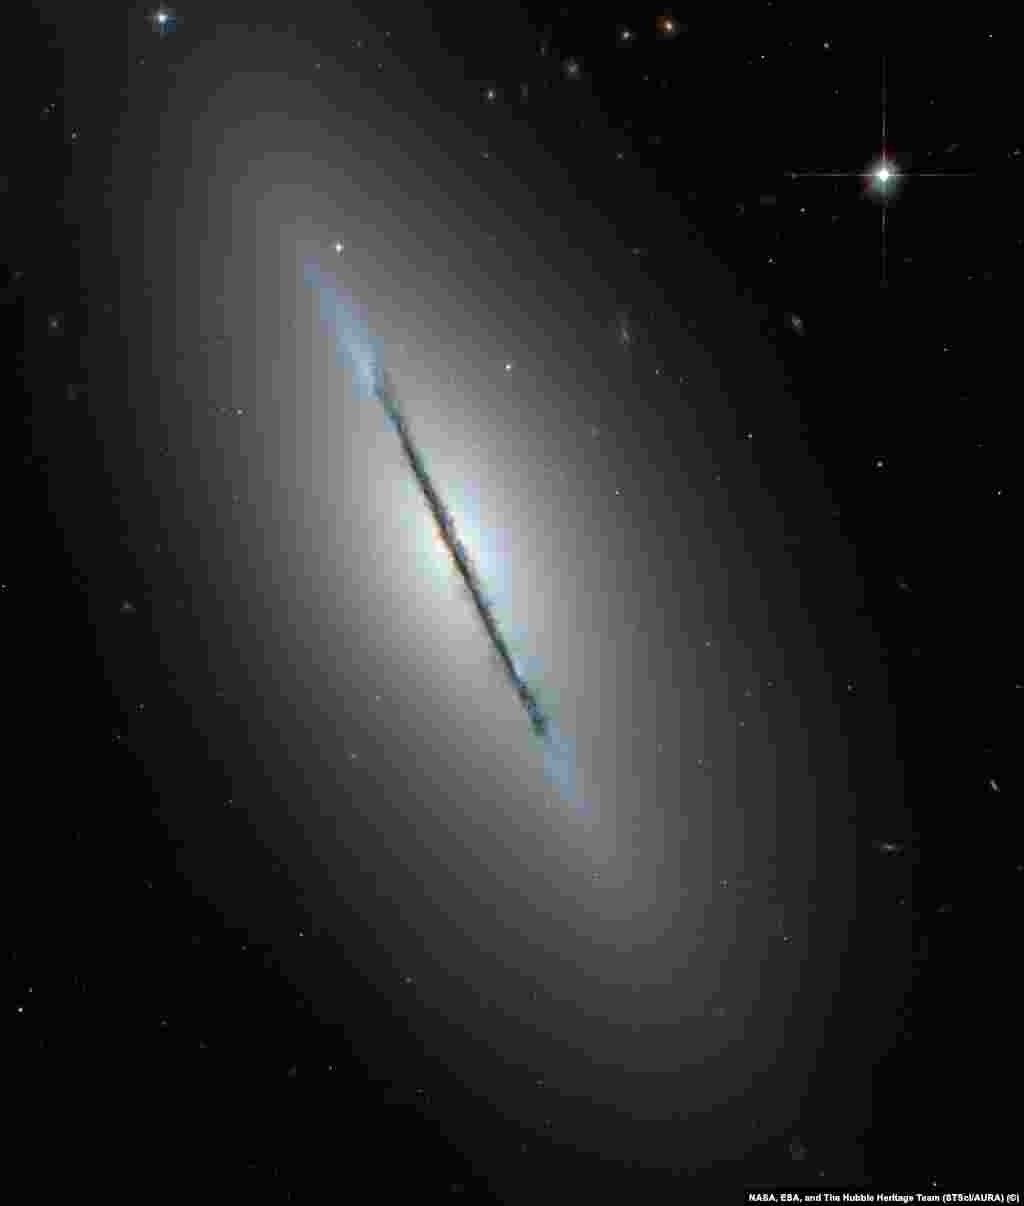 На этом снимке галактики NGC 5866 (также известной как &laquo;Веретено&raquo;) можно подробно рассмотреть галактику с необычного ракурса - с ребра. Вдоль плоскости галактики четко различимы темные области космической пыли. В центре, вокруг светящегося галактического ядра можно заметить едва различимое красное сияние - это балдж, скопление плотно расположенных старых звезд.